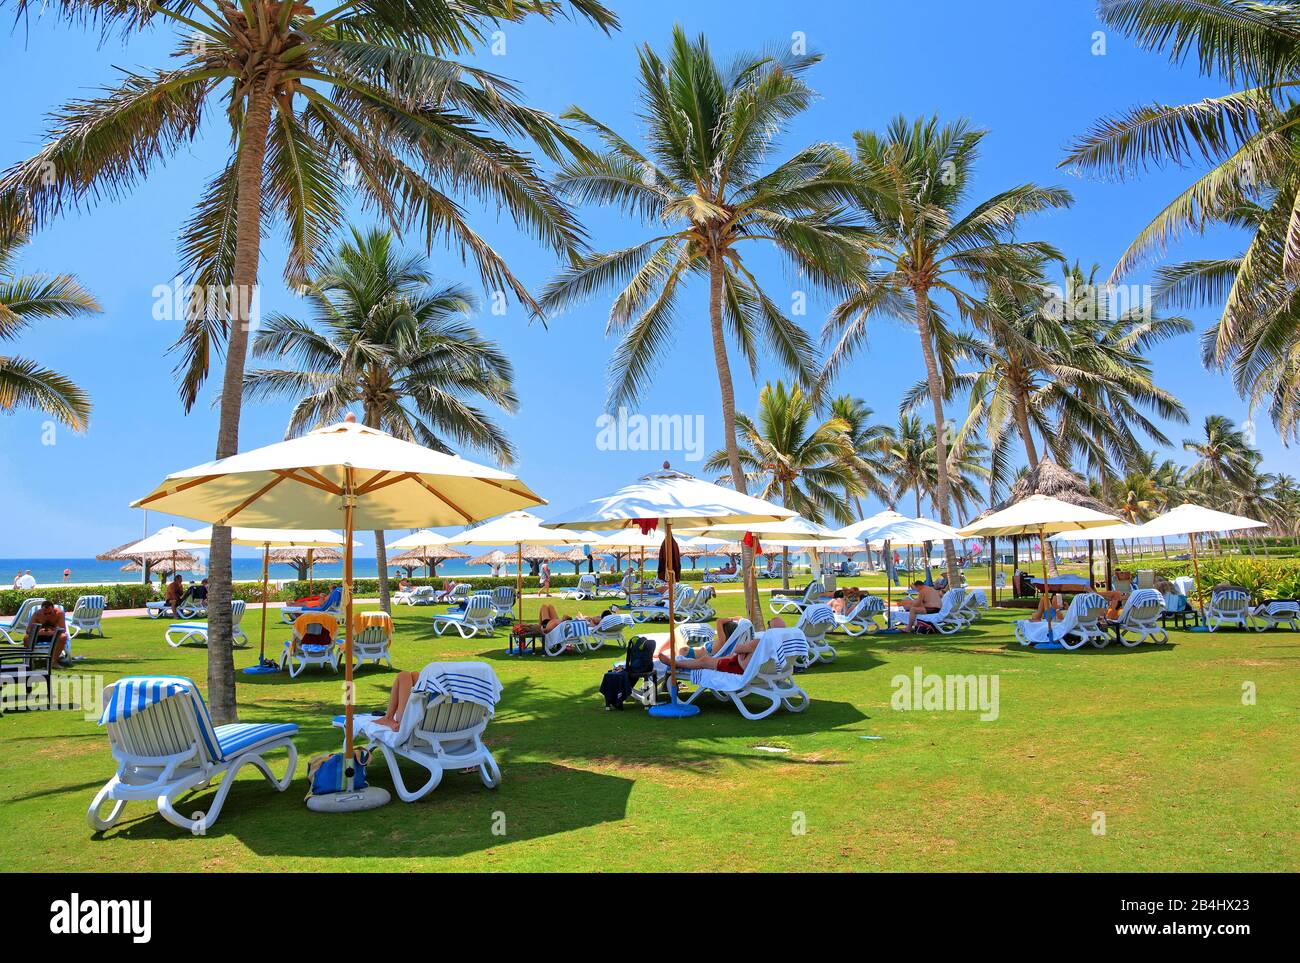 Jardín con tumbonas y sombrillas del complejo hotelero Crowne Plaza, Salalah, Mar Arábigo, Omán Foto de stock